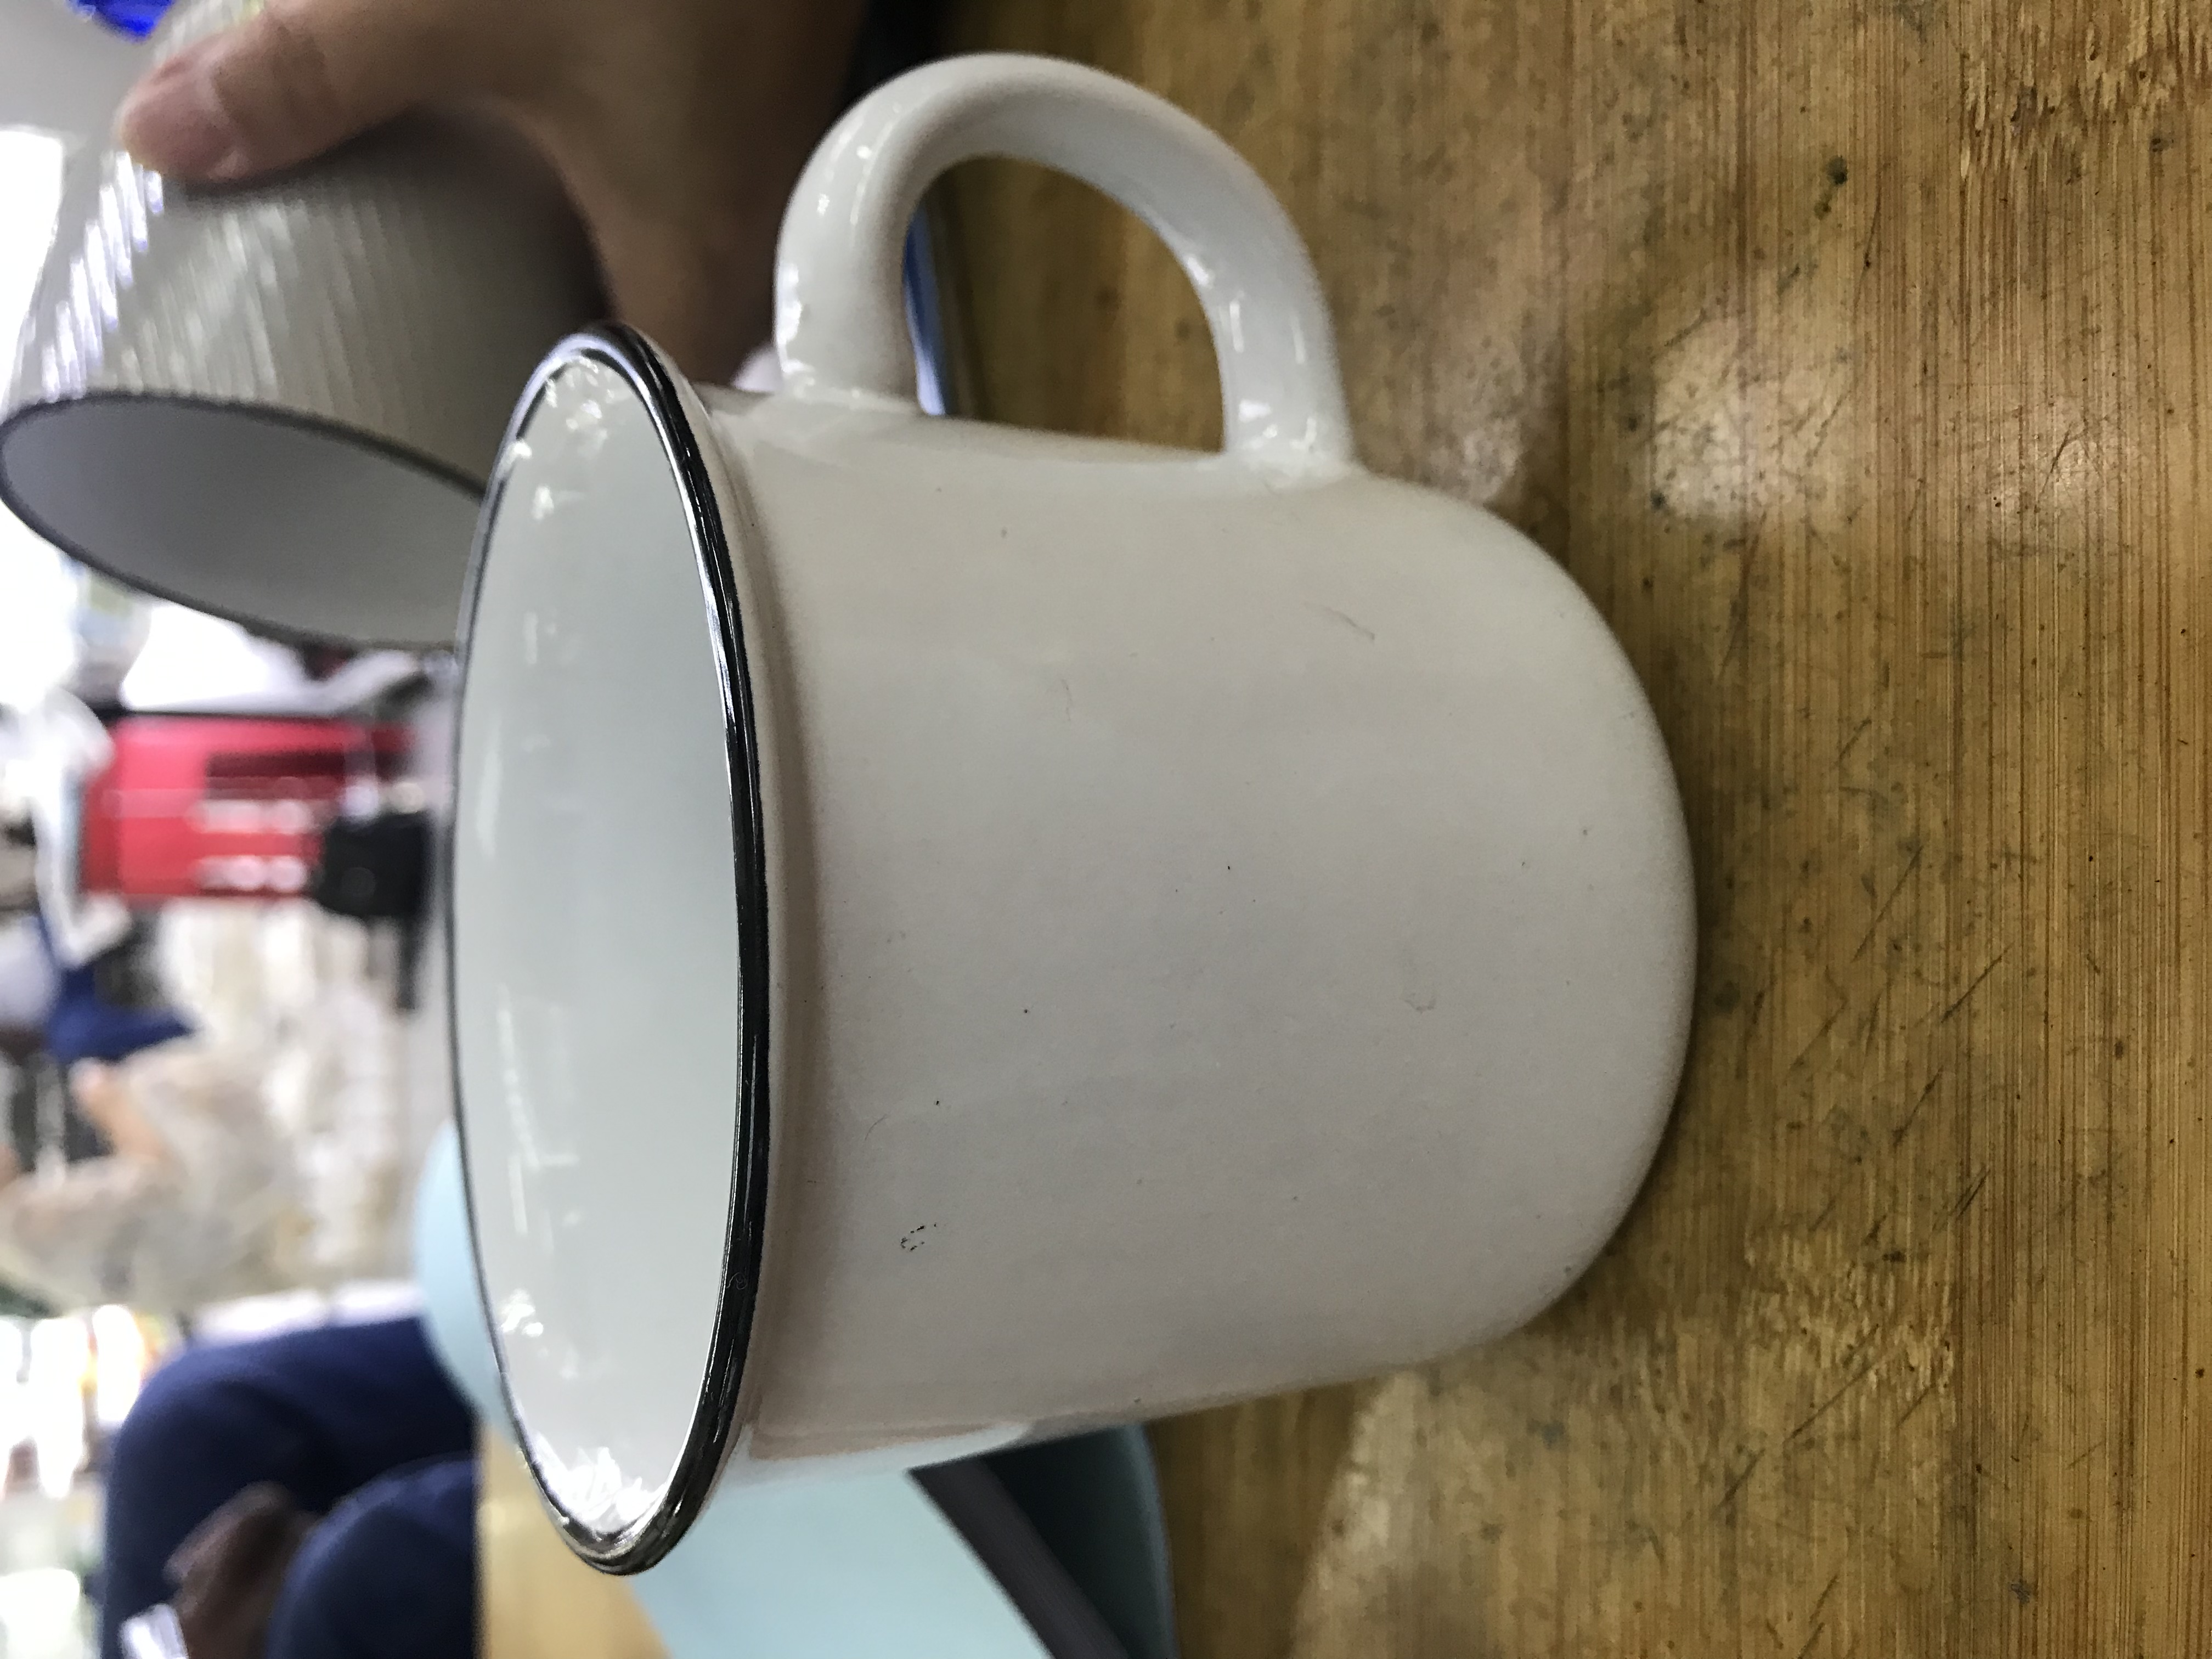 马克杯陶瓷杯套装 精美浮雕瓷杯 高档耐热陶瓷杯子 适用于家庭办公室茶水咖啡杯